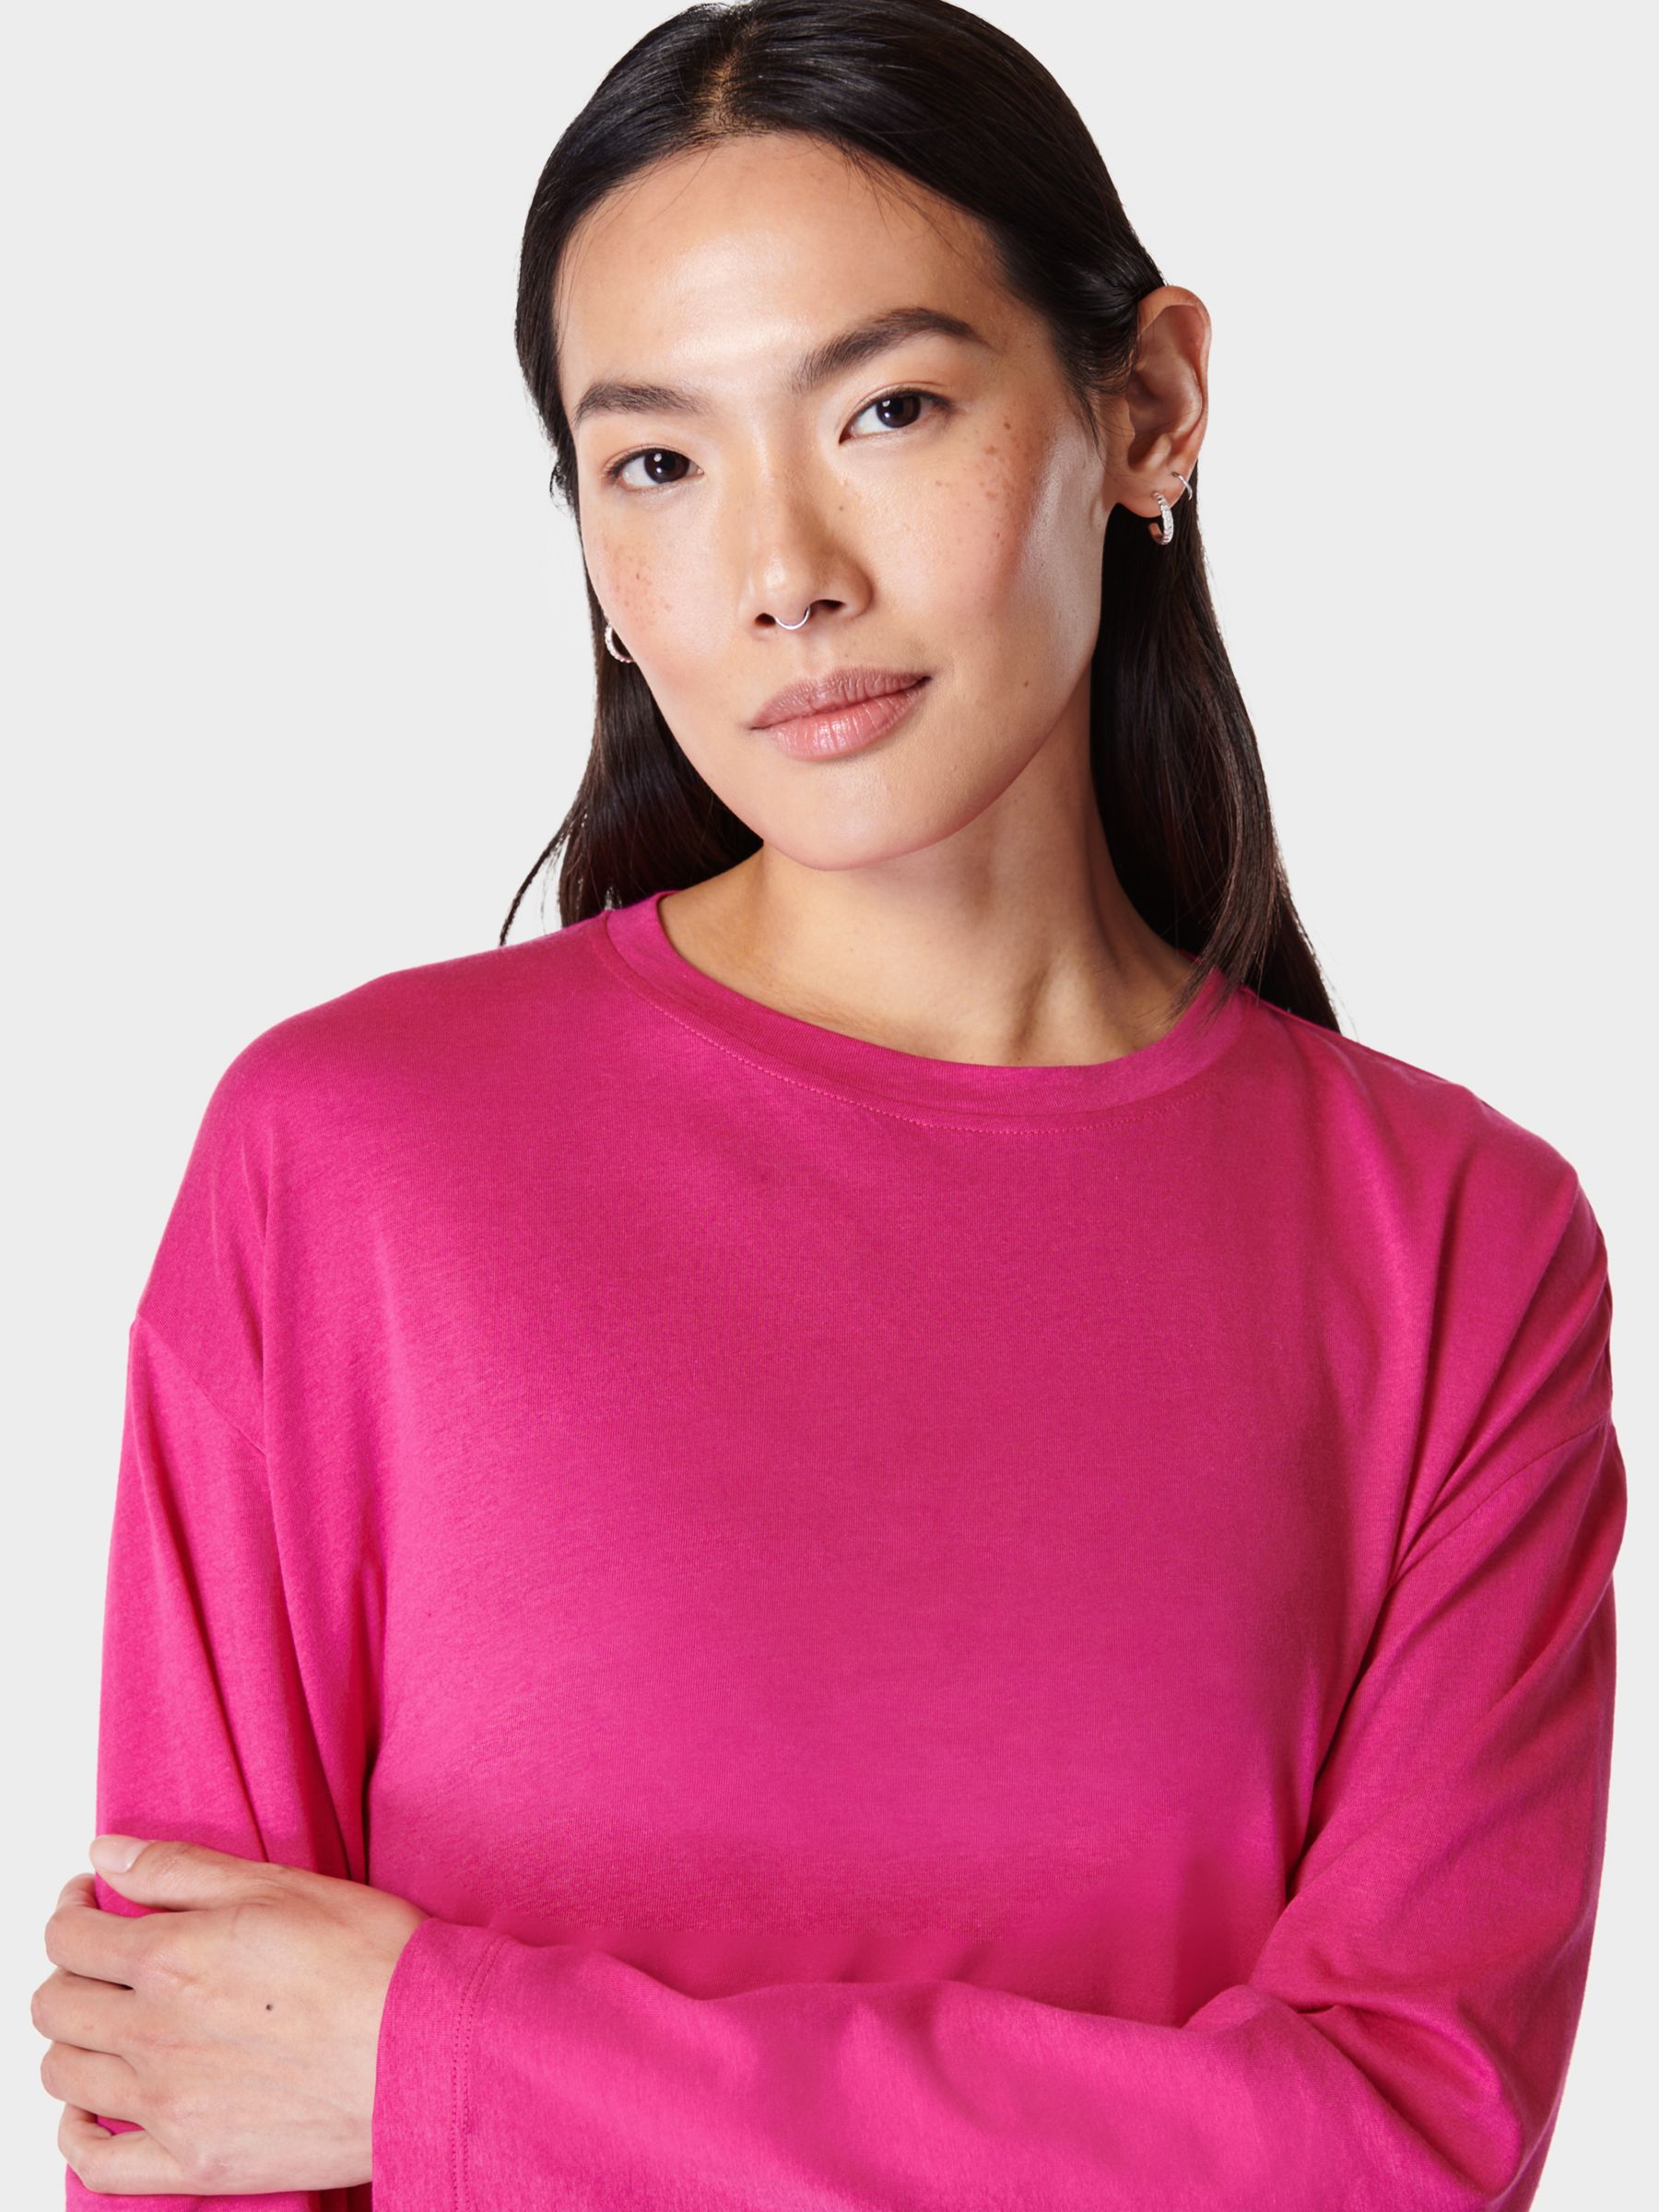 Sweaty Betty Essential Crop Long Sleeve T-Shirt, Beet Pink, XXS